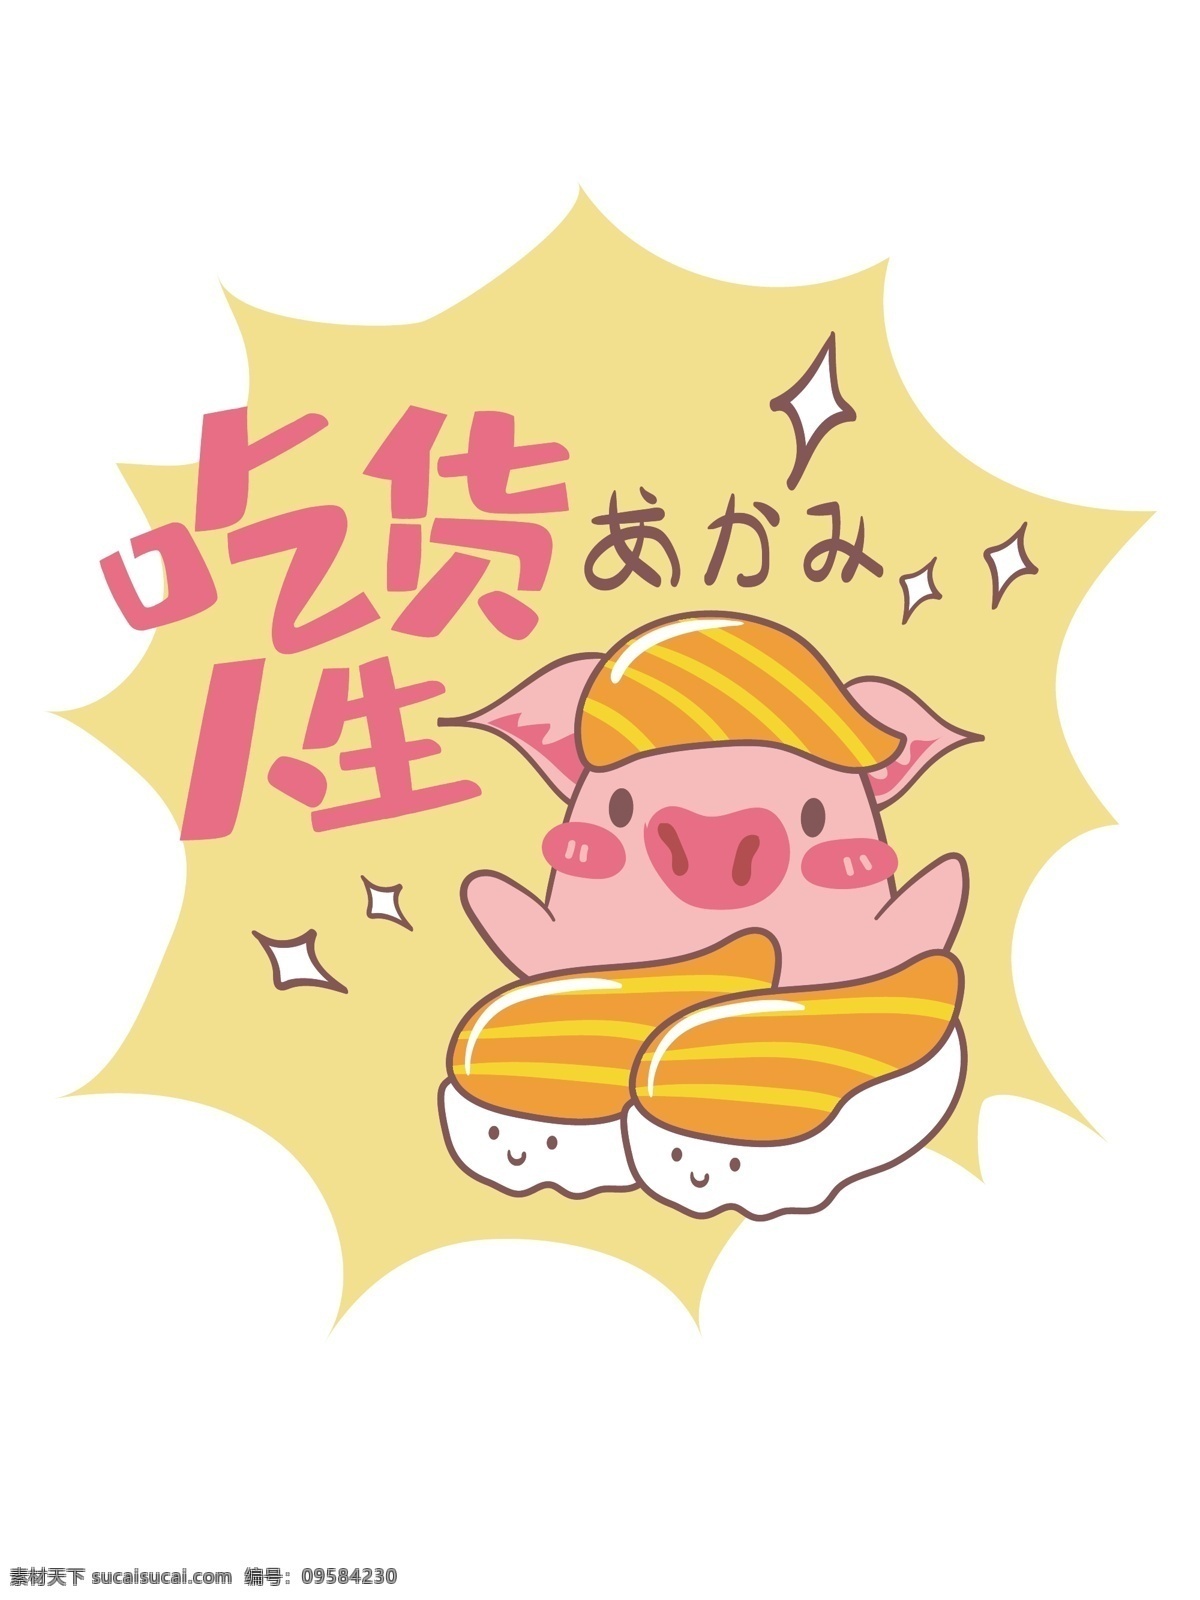 帆布 袋 粉红 猪 寿司 吃货 人生 小清新 吃货人生 粉红猪 矢量 日料 帆布袋 帆布包 卡通 可爱